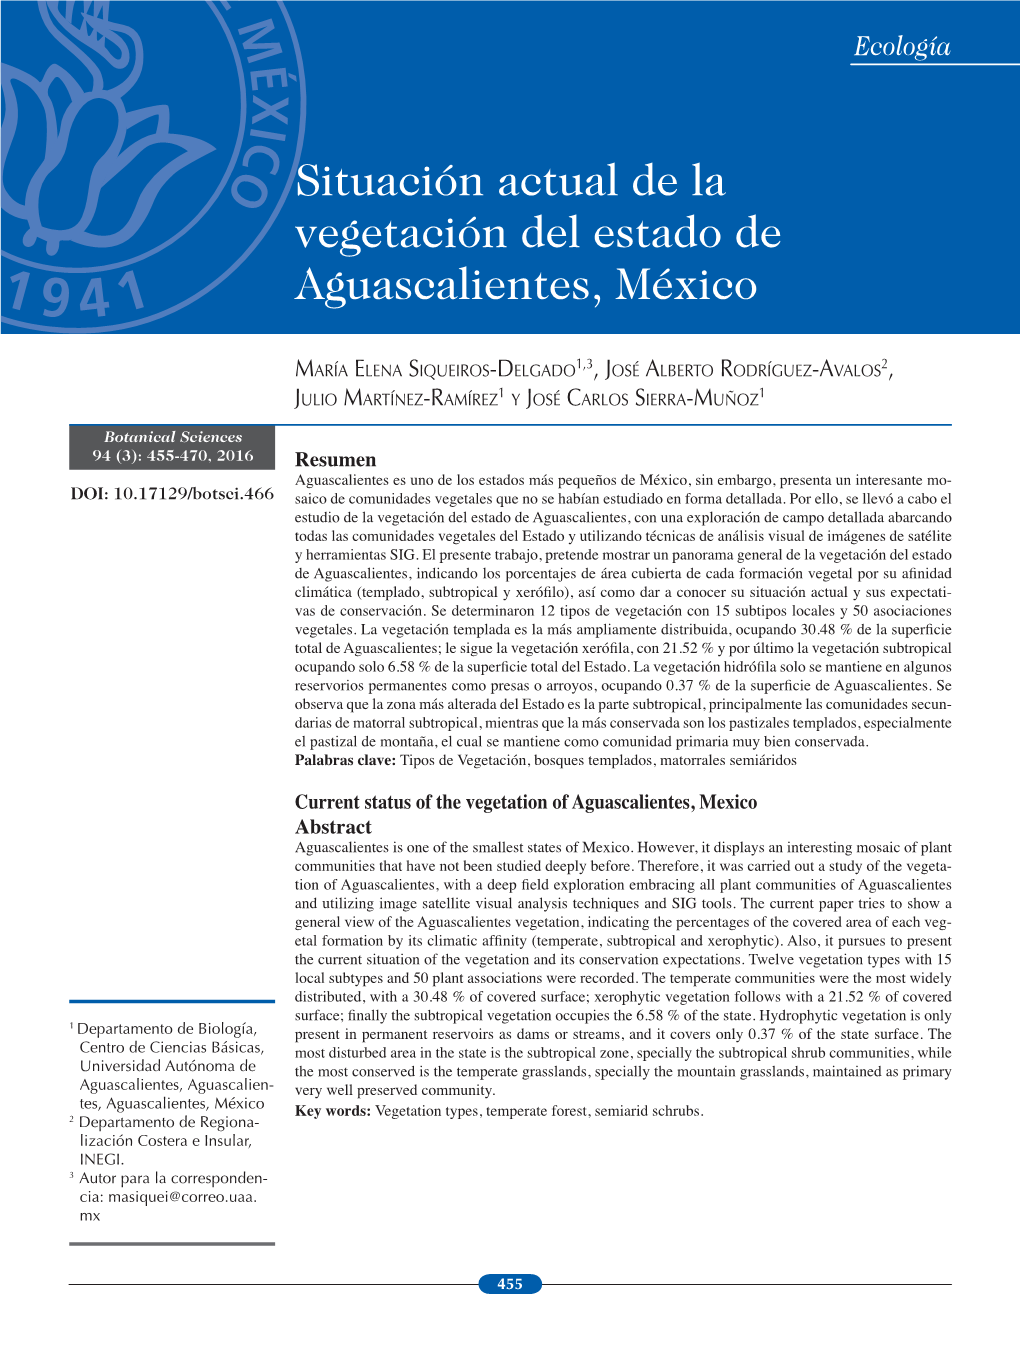 Resumen Current Status of the Vegetation of Aguascalientes